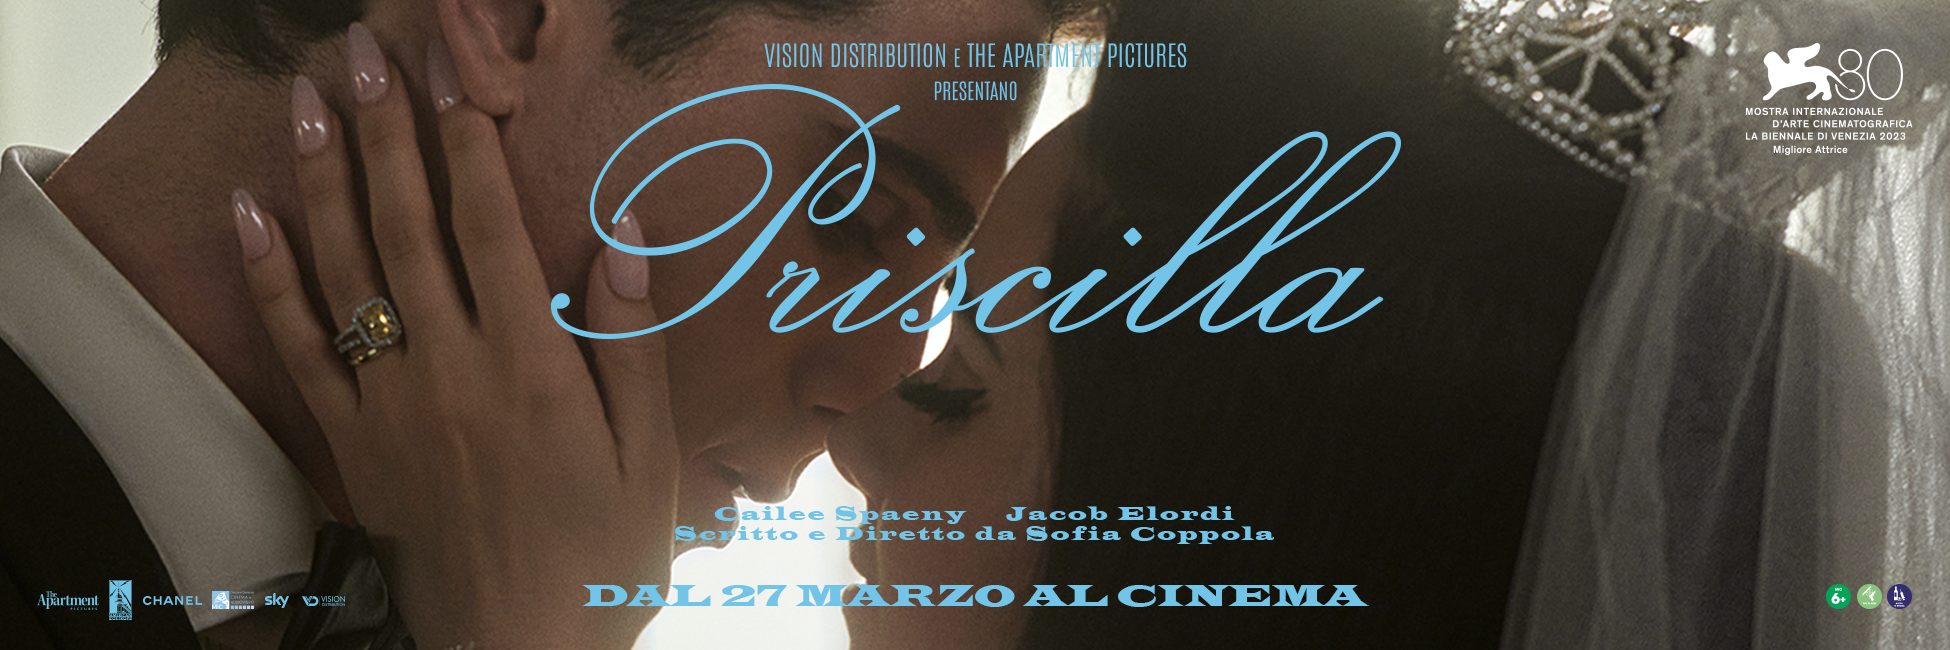 Priscilla-1960x650